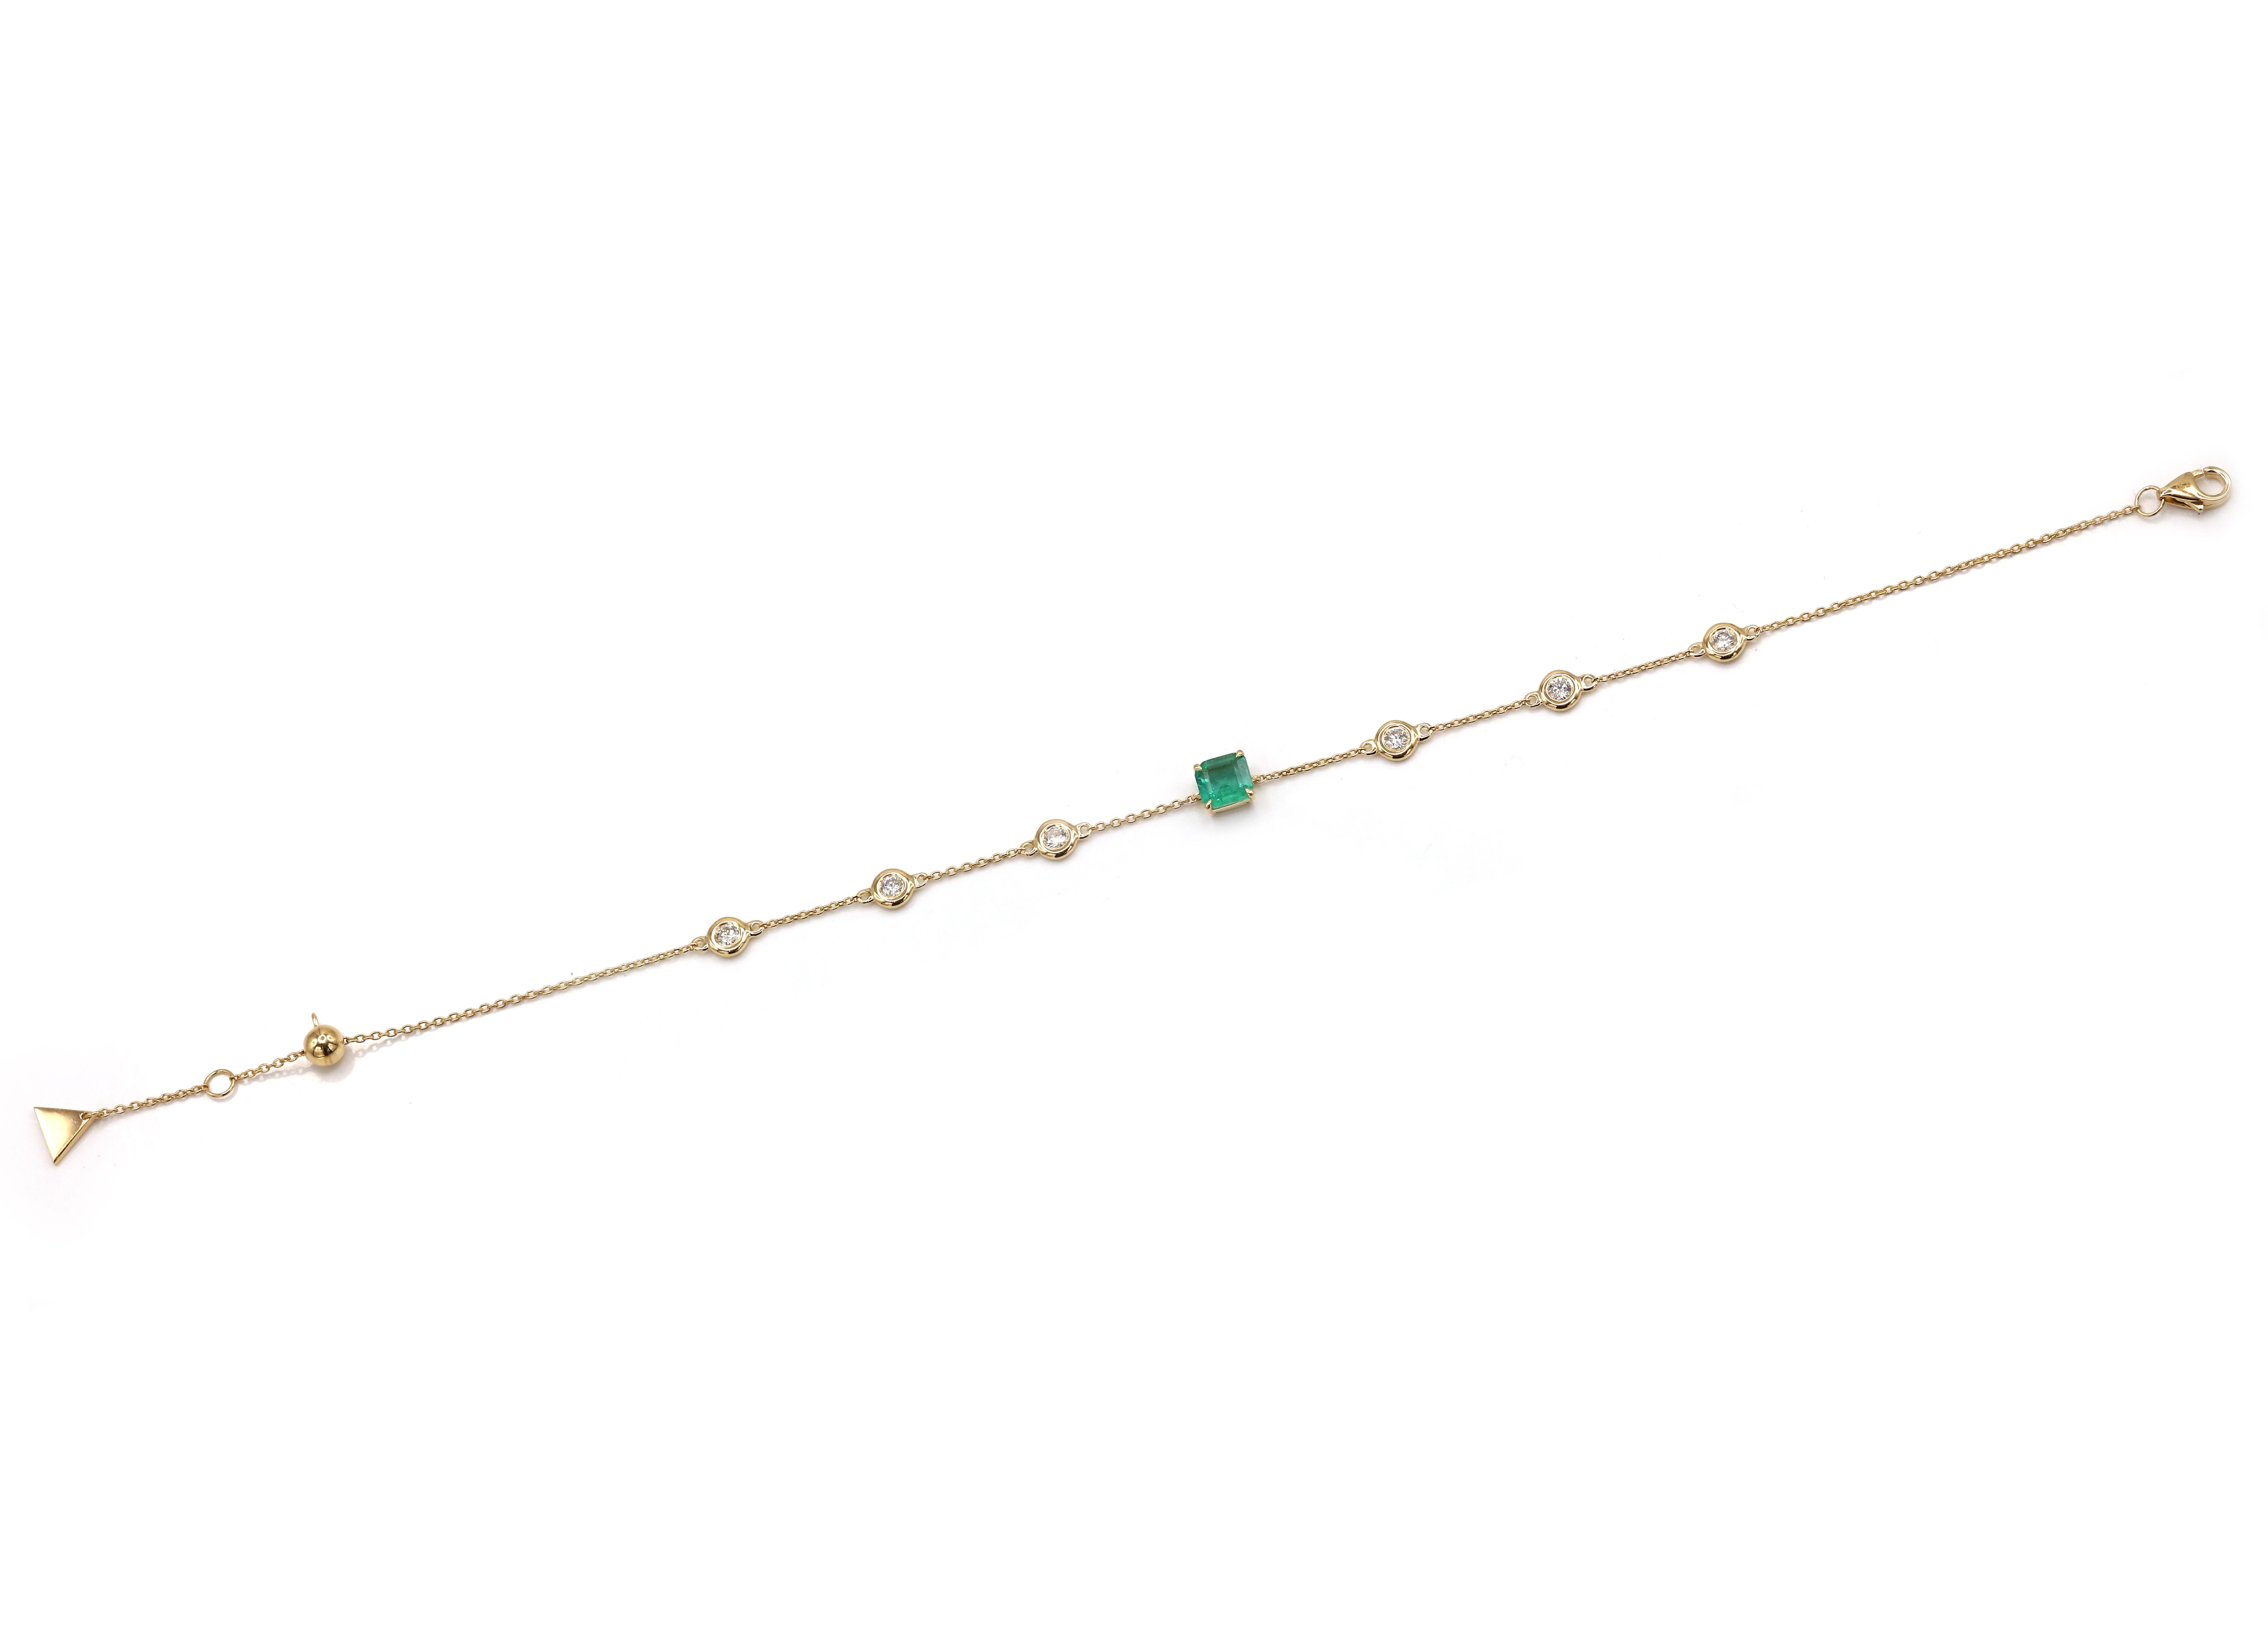 S'inspirant de la nature, de l'amour et de la couleur, ALPENGEM présente un bracelet en chaîne en or jaune 18 K de notre collection d'émeraudes. Ces bijoux fins peuvent être portés tous les jours et superposés pour créer des looks différents. Les